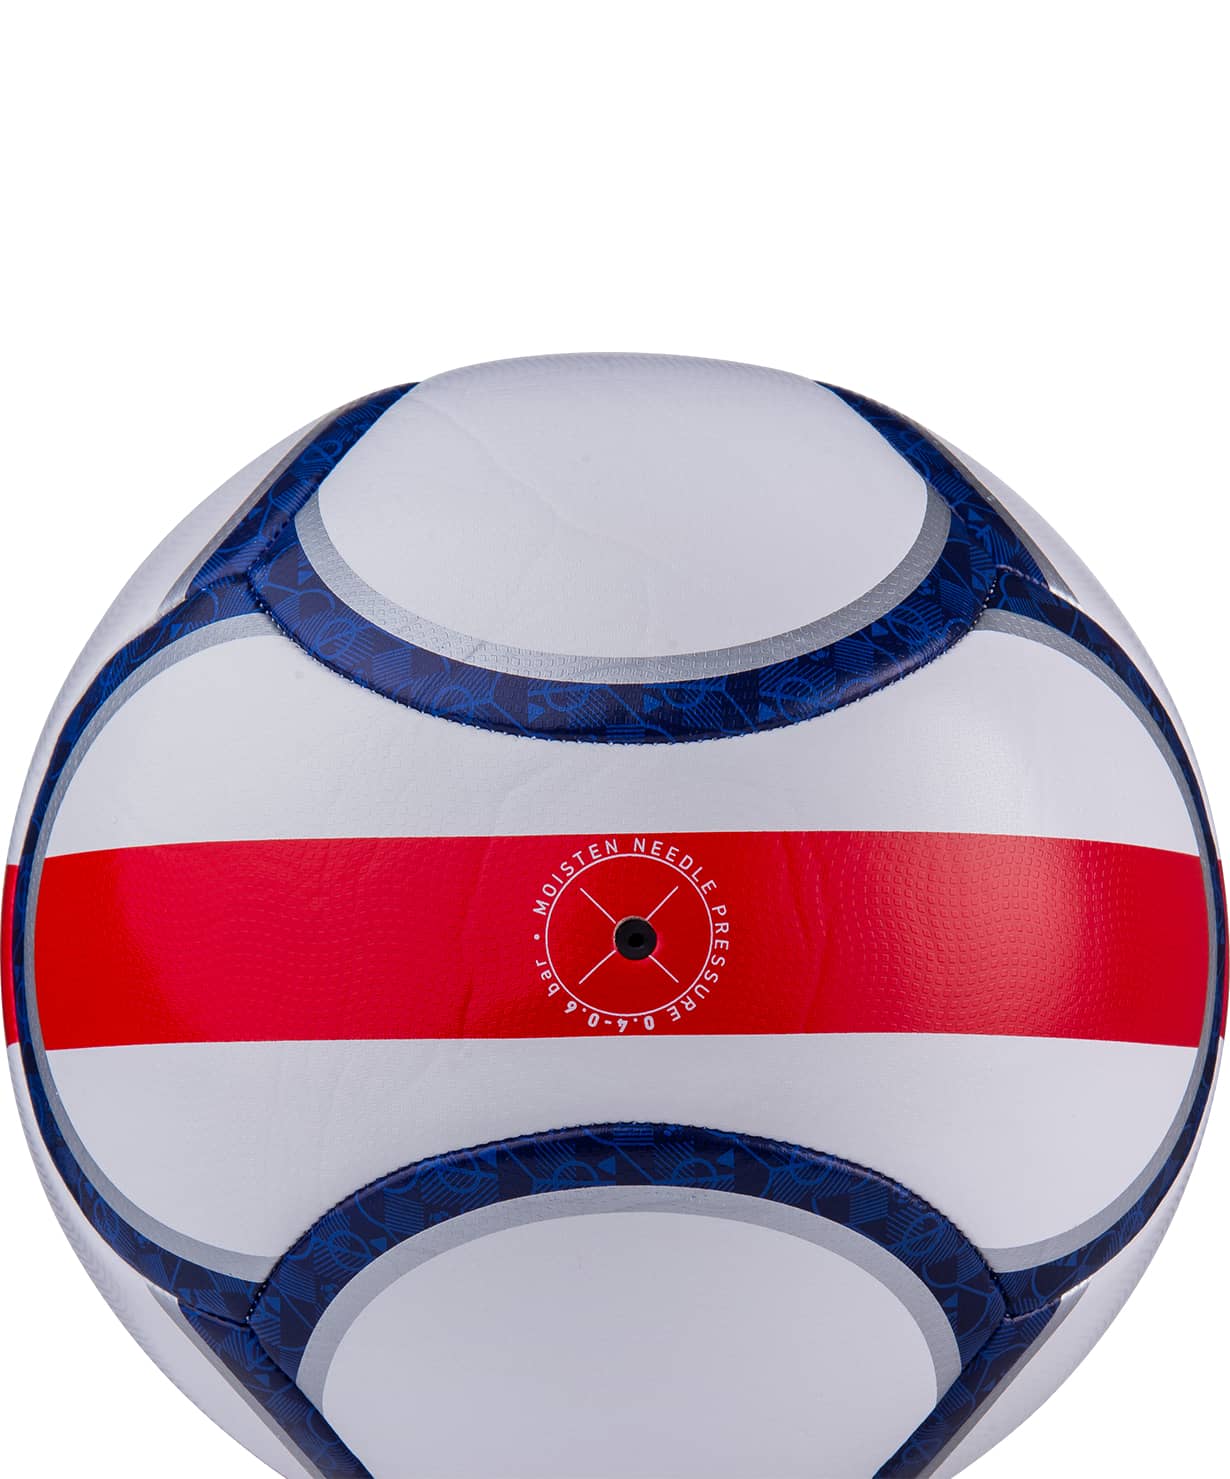 Мяч футбольный Jögel Flagball England №5 1230_1479